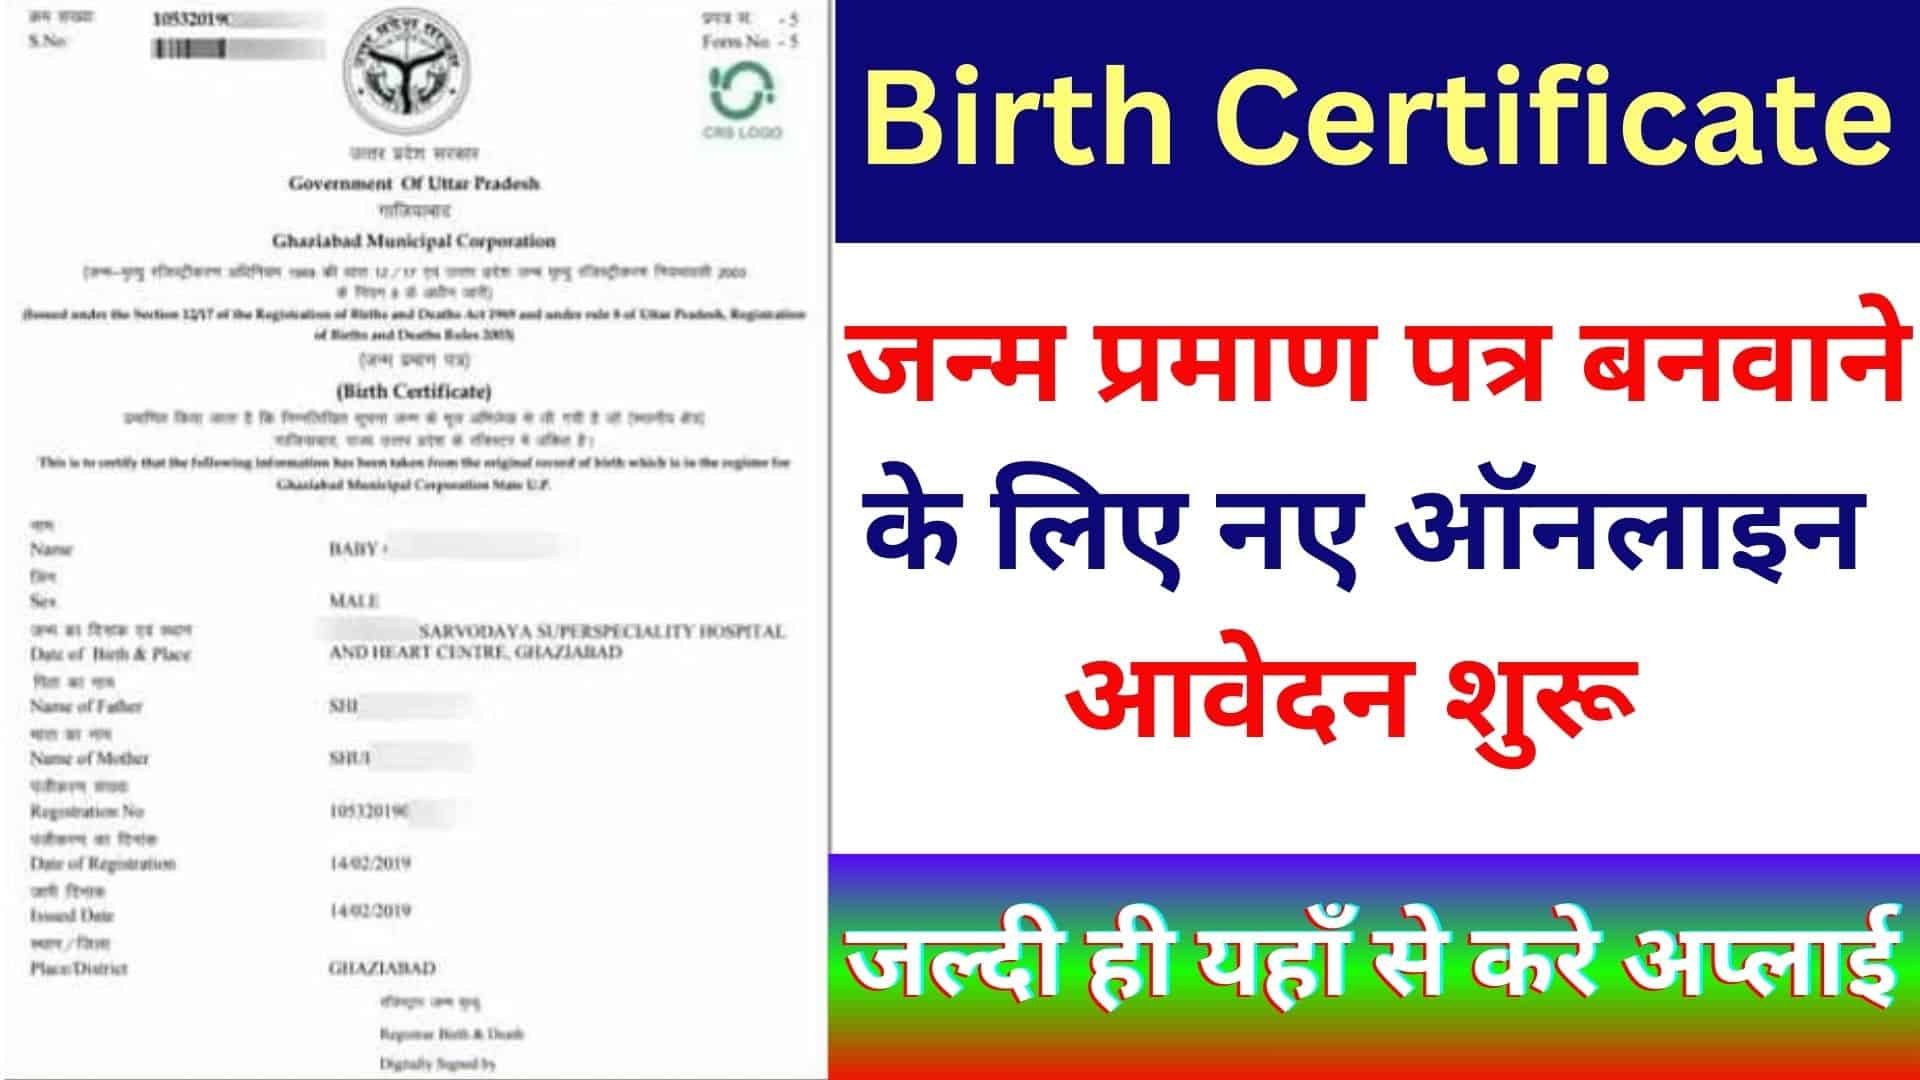 Janam Praman Patra Online Kaise banaye : जन्म प्रमाण पत्र बनवाने के लिए नए ऑनलाइन आवेदन शुरू जल्दी ही यहाँ से करे अप्लाई